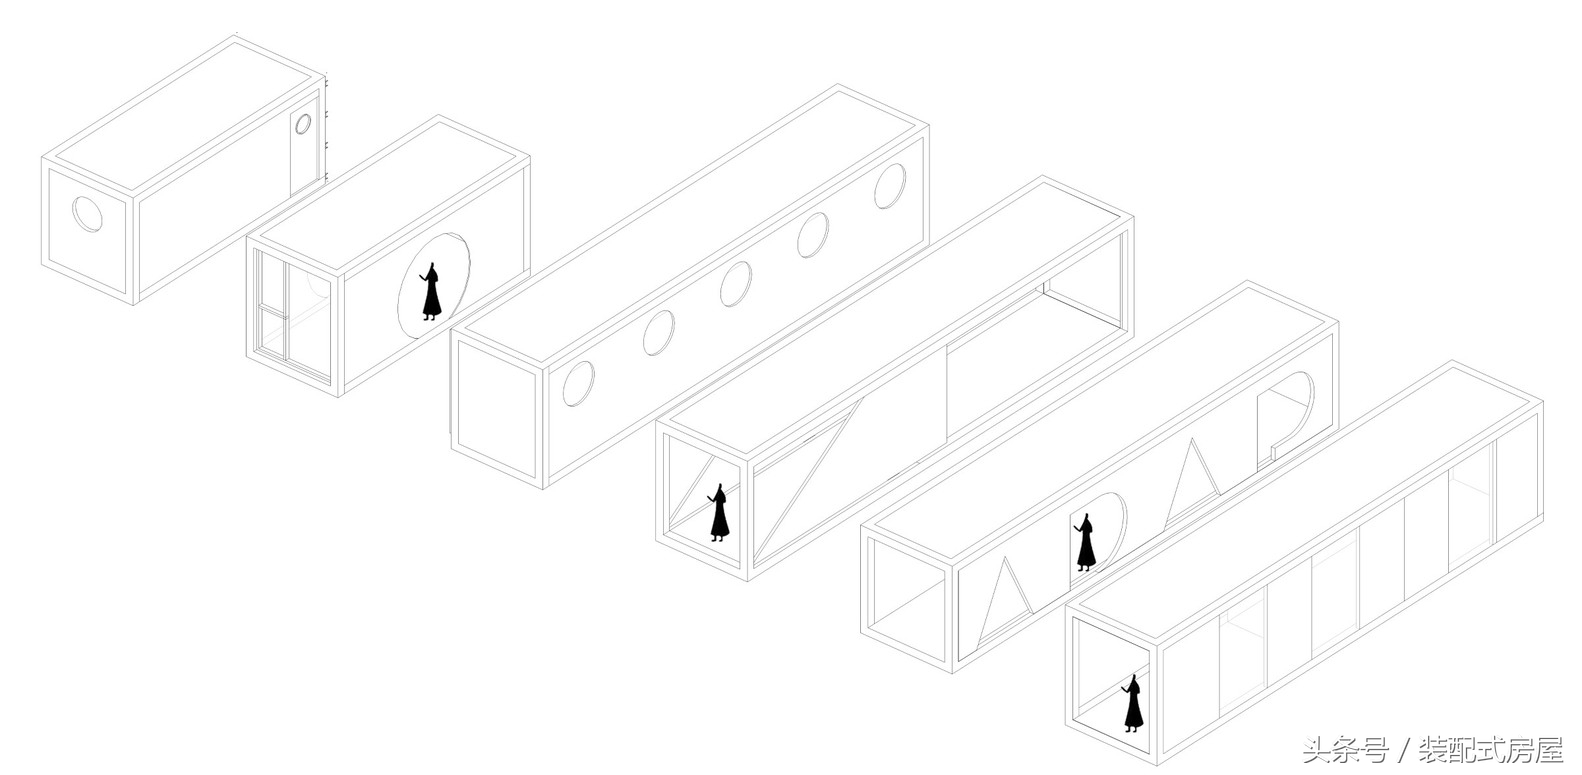 集裝箱建筑模塊化，組成集裝箱懸崖餐廳